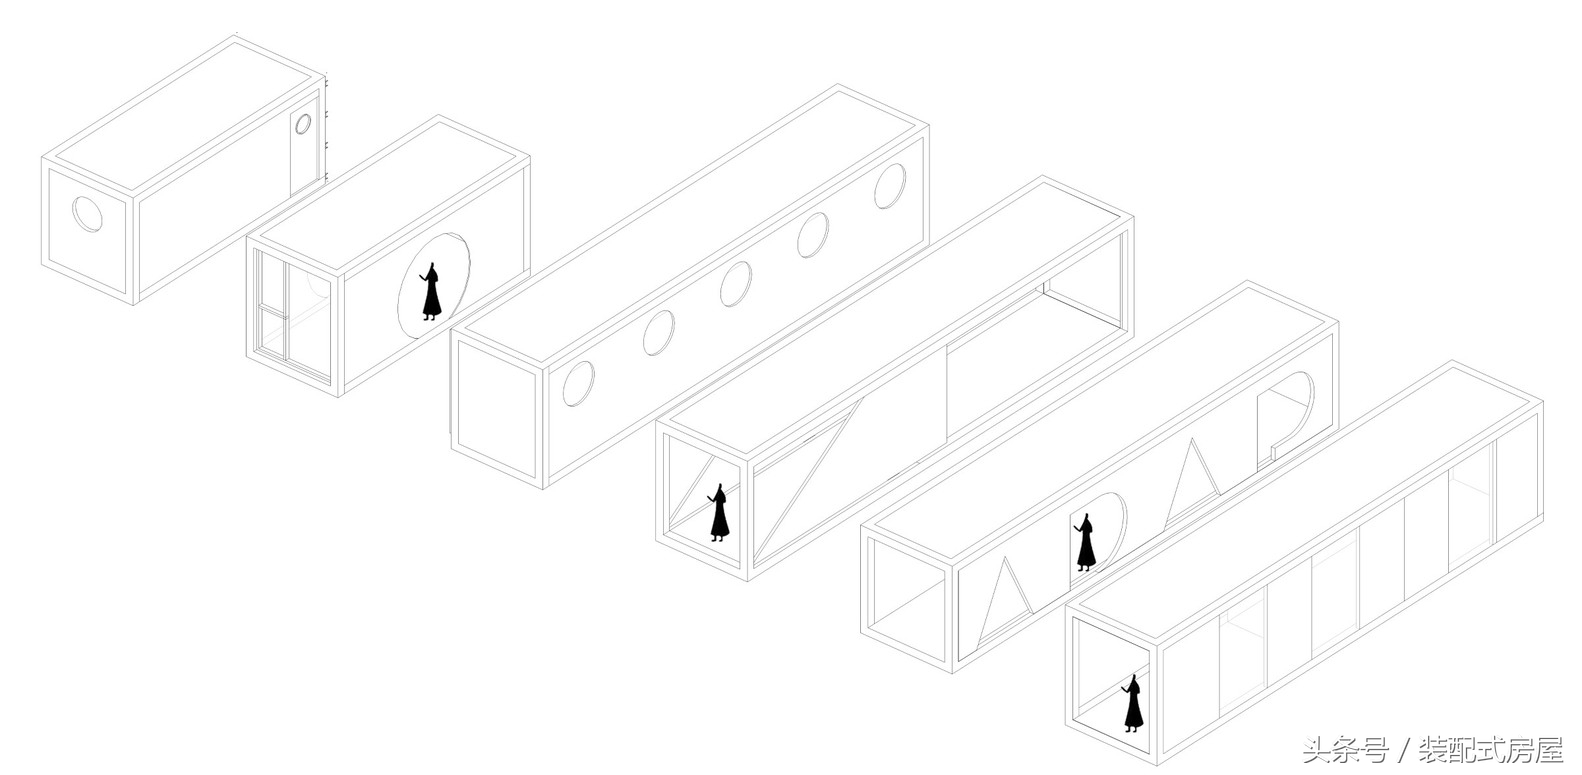 集裝箱建筑模塊化，組成集裝箱懸崖餐廳